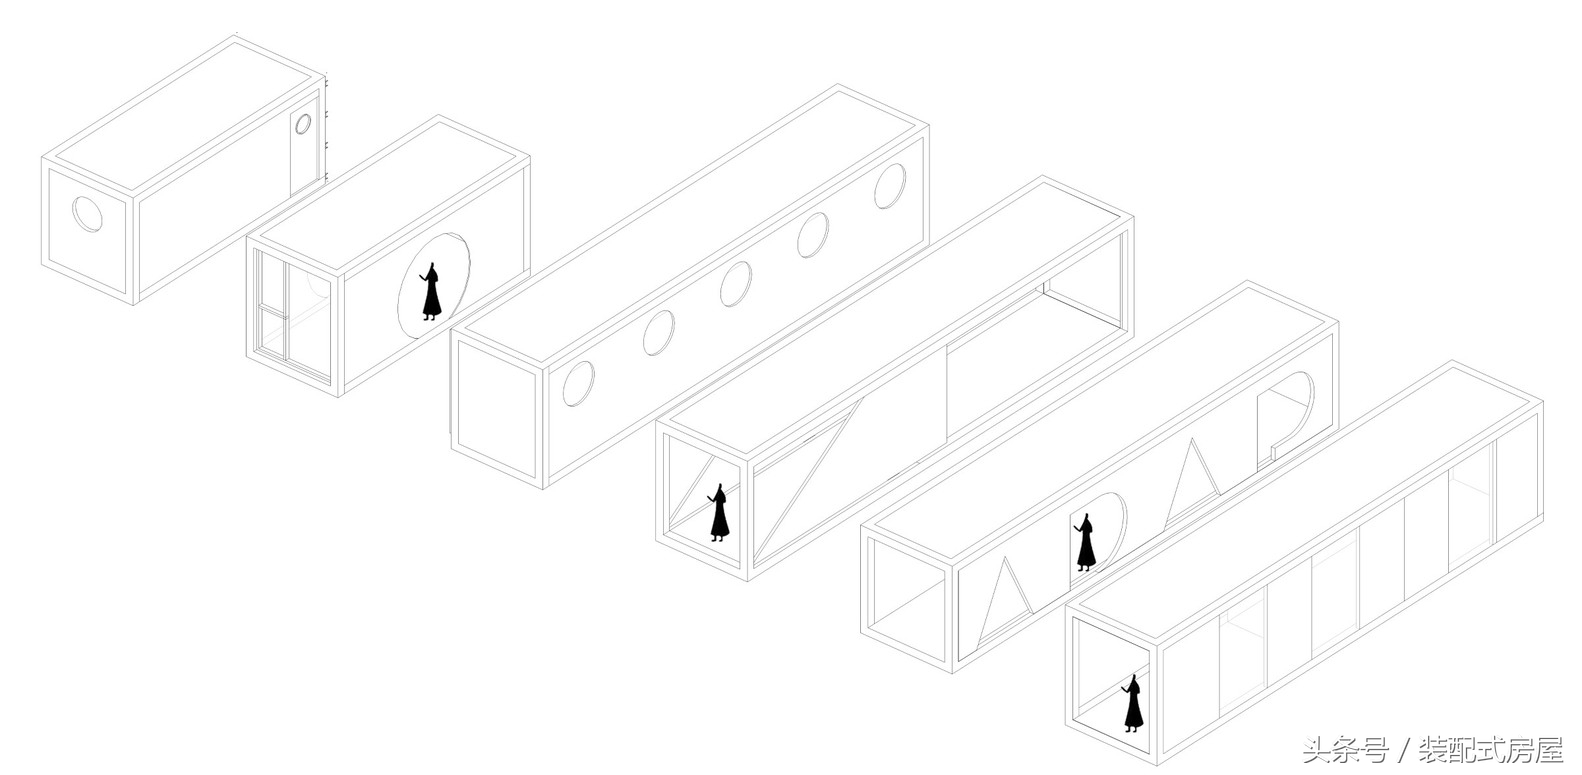 集裝箱建筑模塊化，組成集裝箱懸崖餐廳